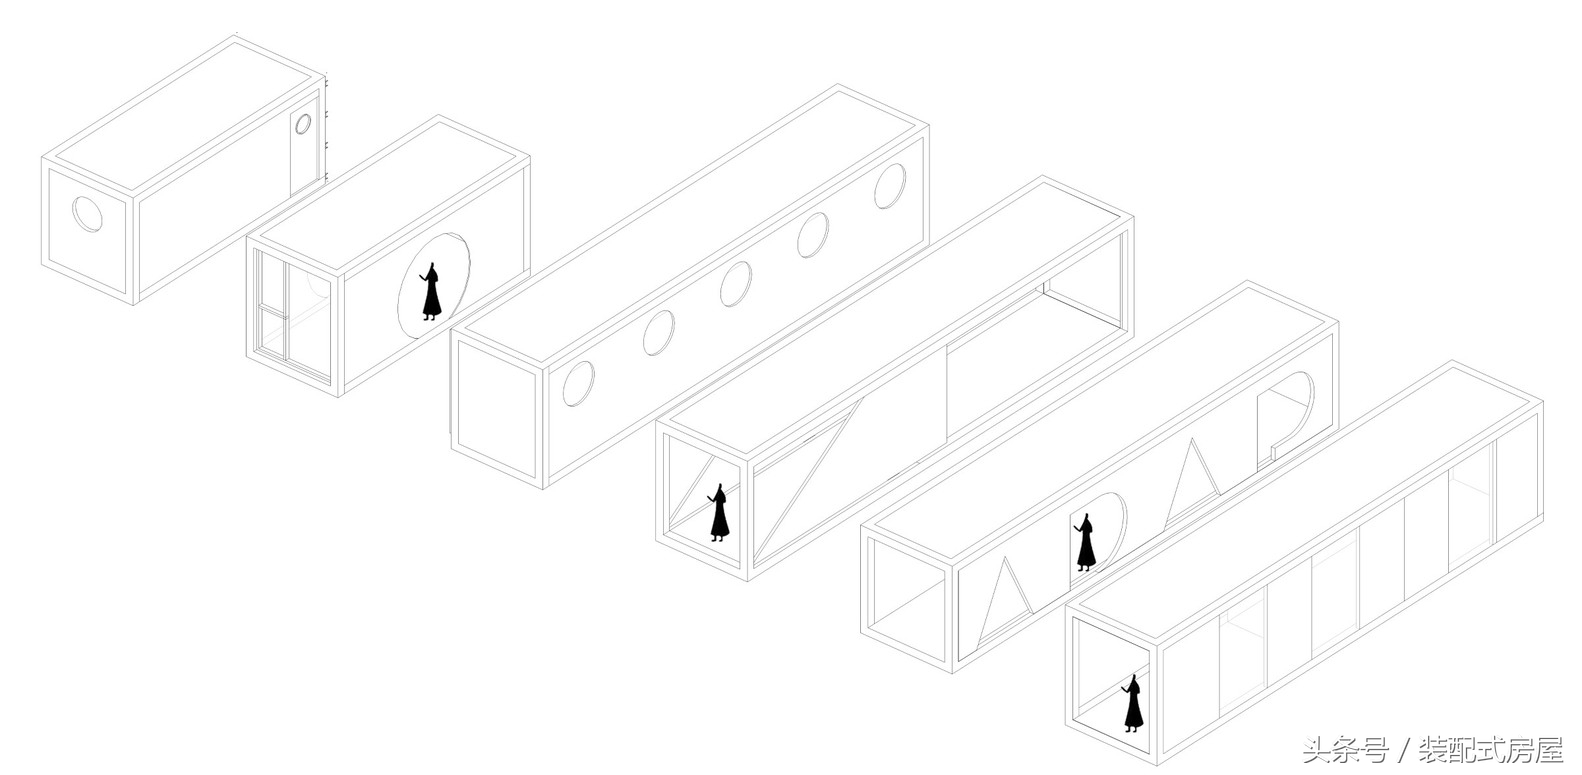 集裝箱建筑模塊化，組成集裝箱懸崖餐廳